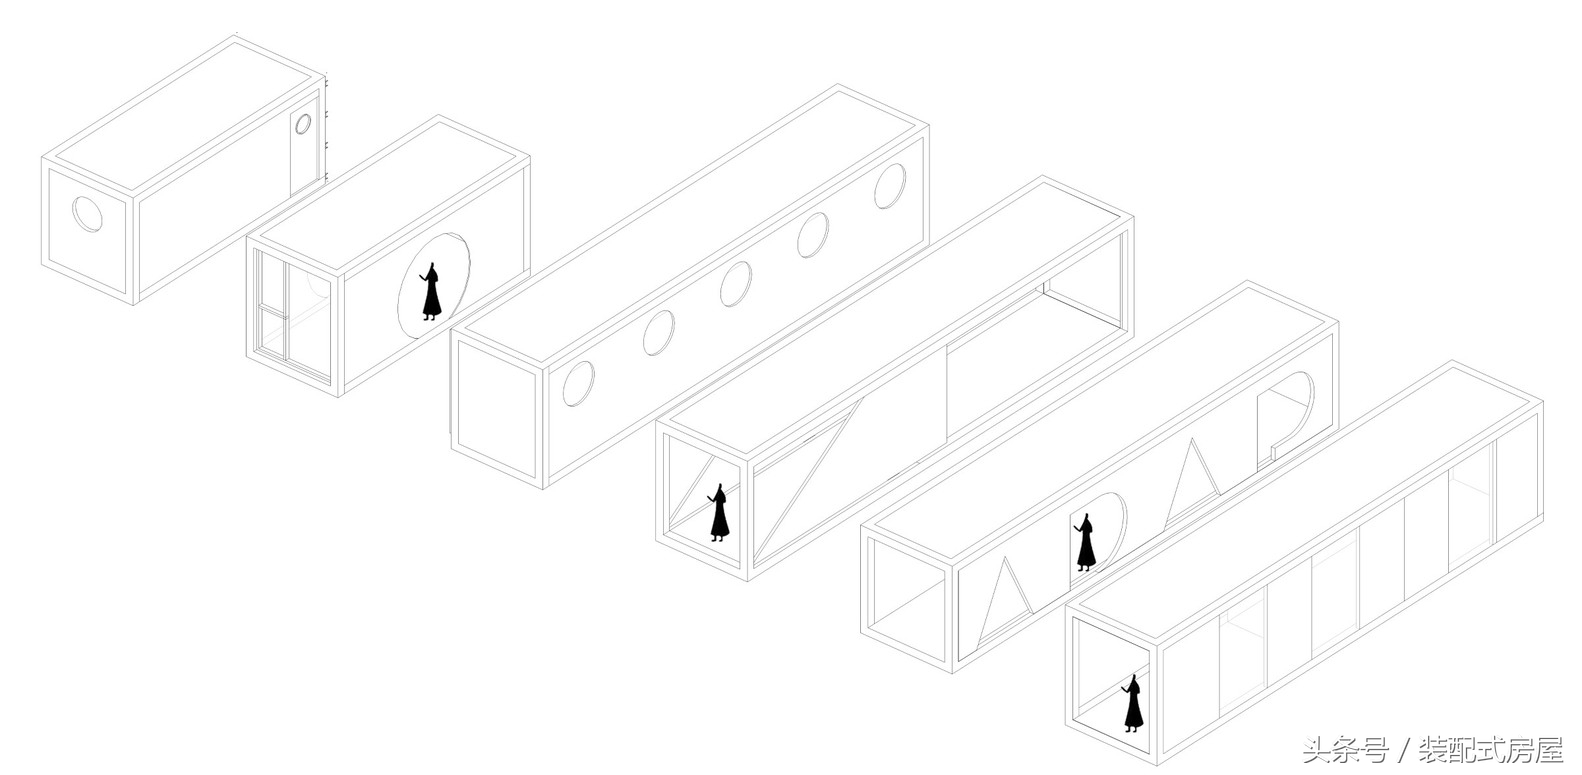 集裝箱建筑模塊化，組成集裝箱懸崖餐廳